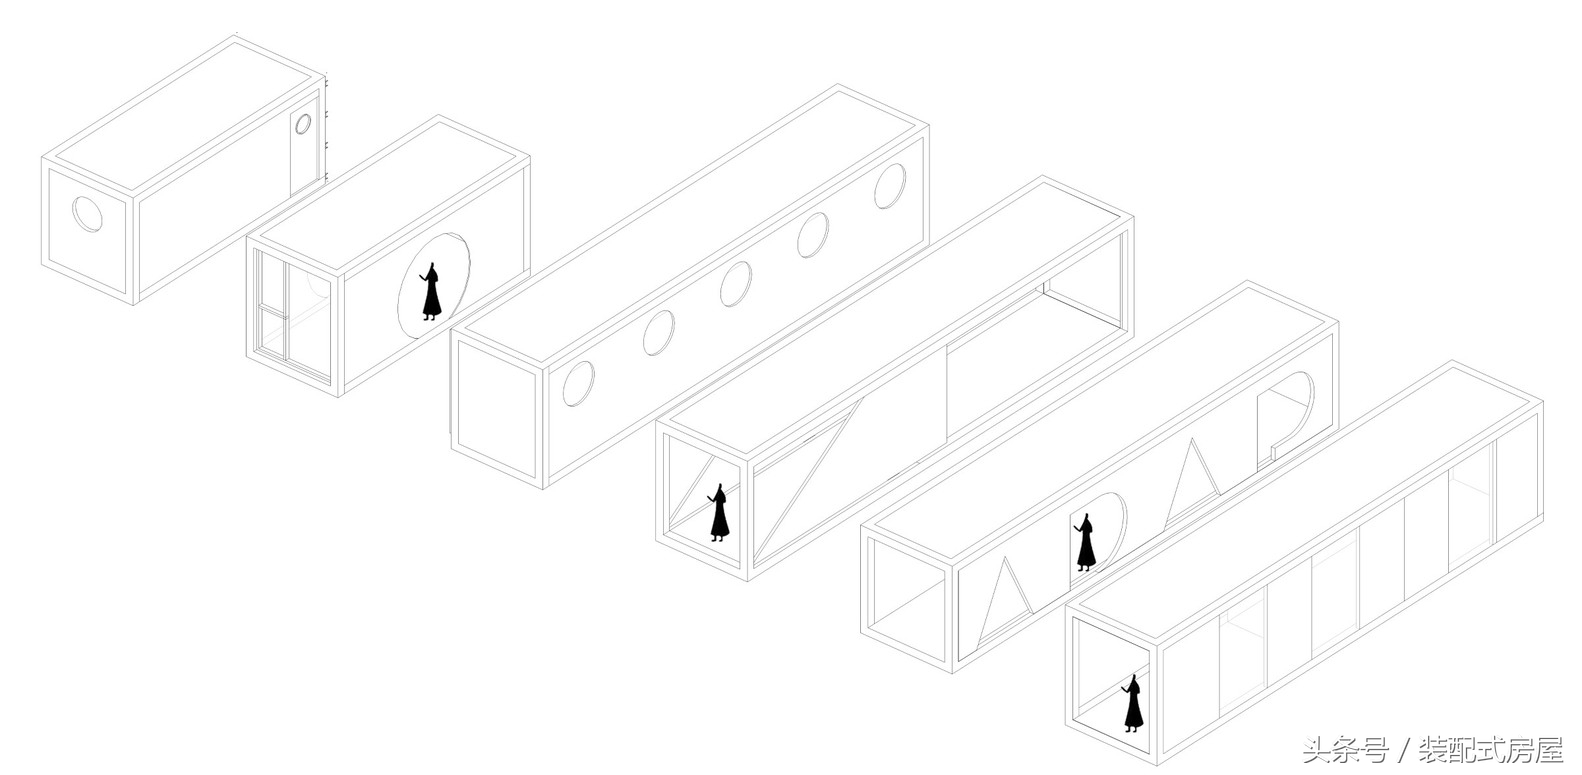 集裝箱建筑模塊化，組成集裝箱懸崖餐廳